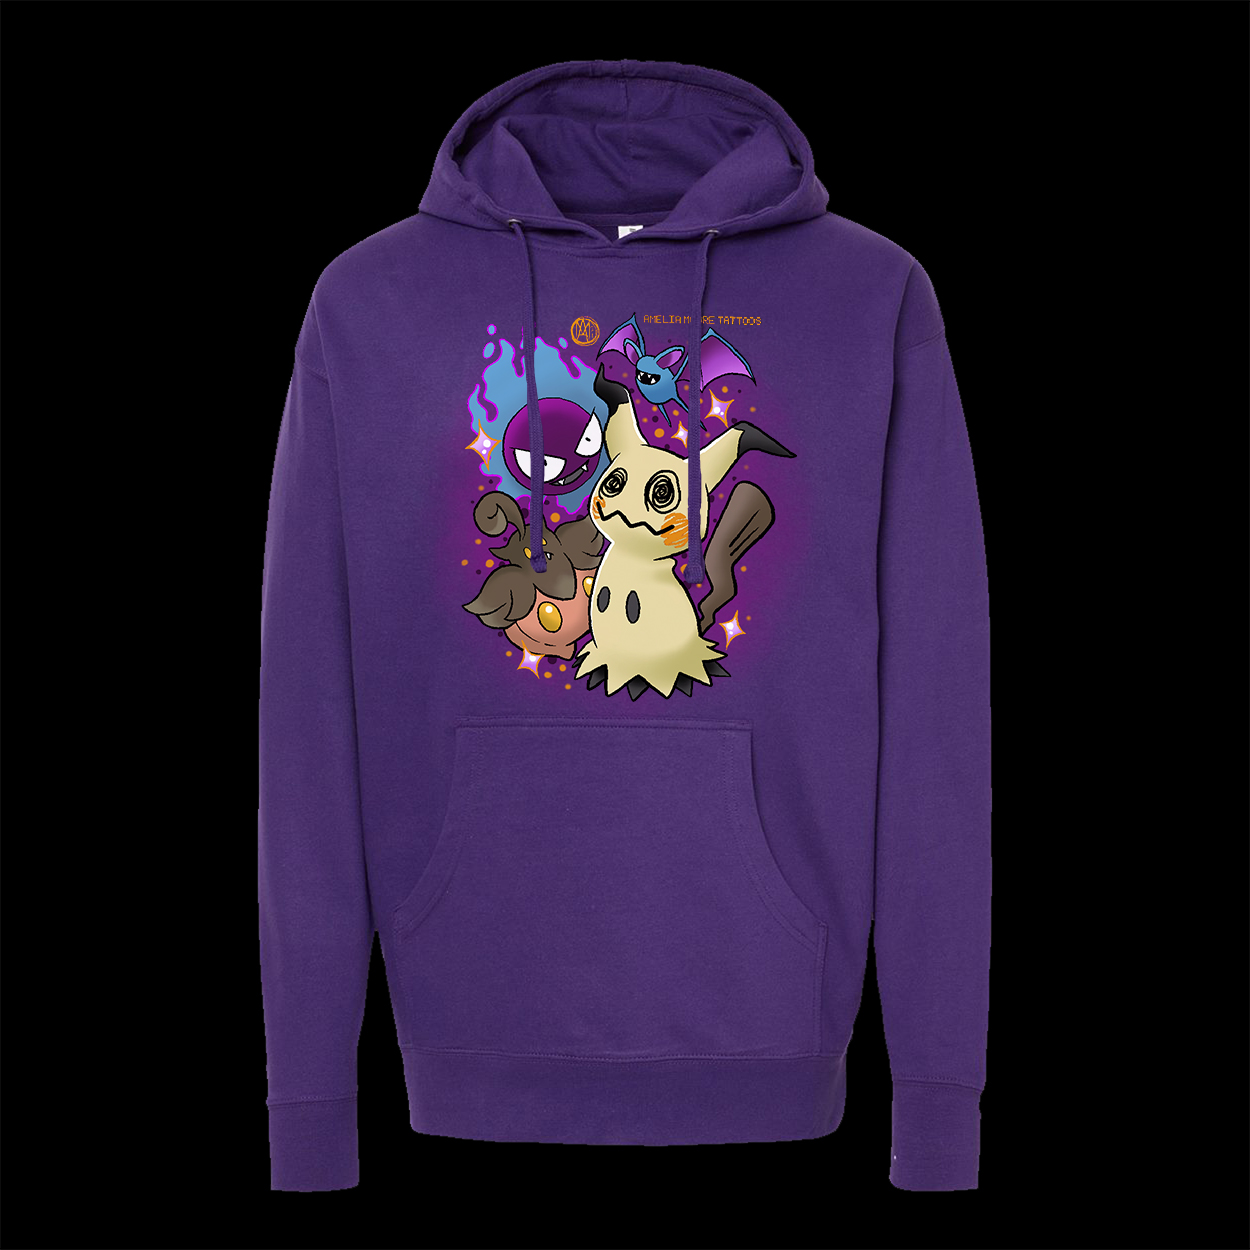 Amelia Moore Ghastly hoodie purple color